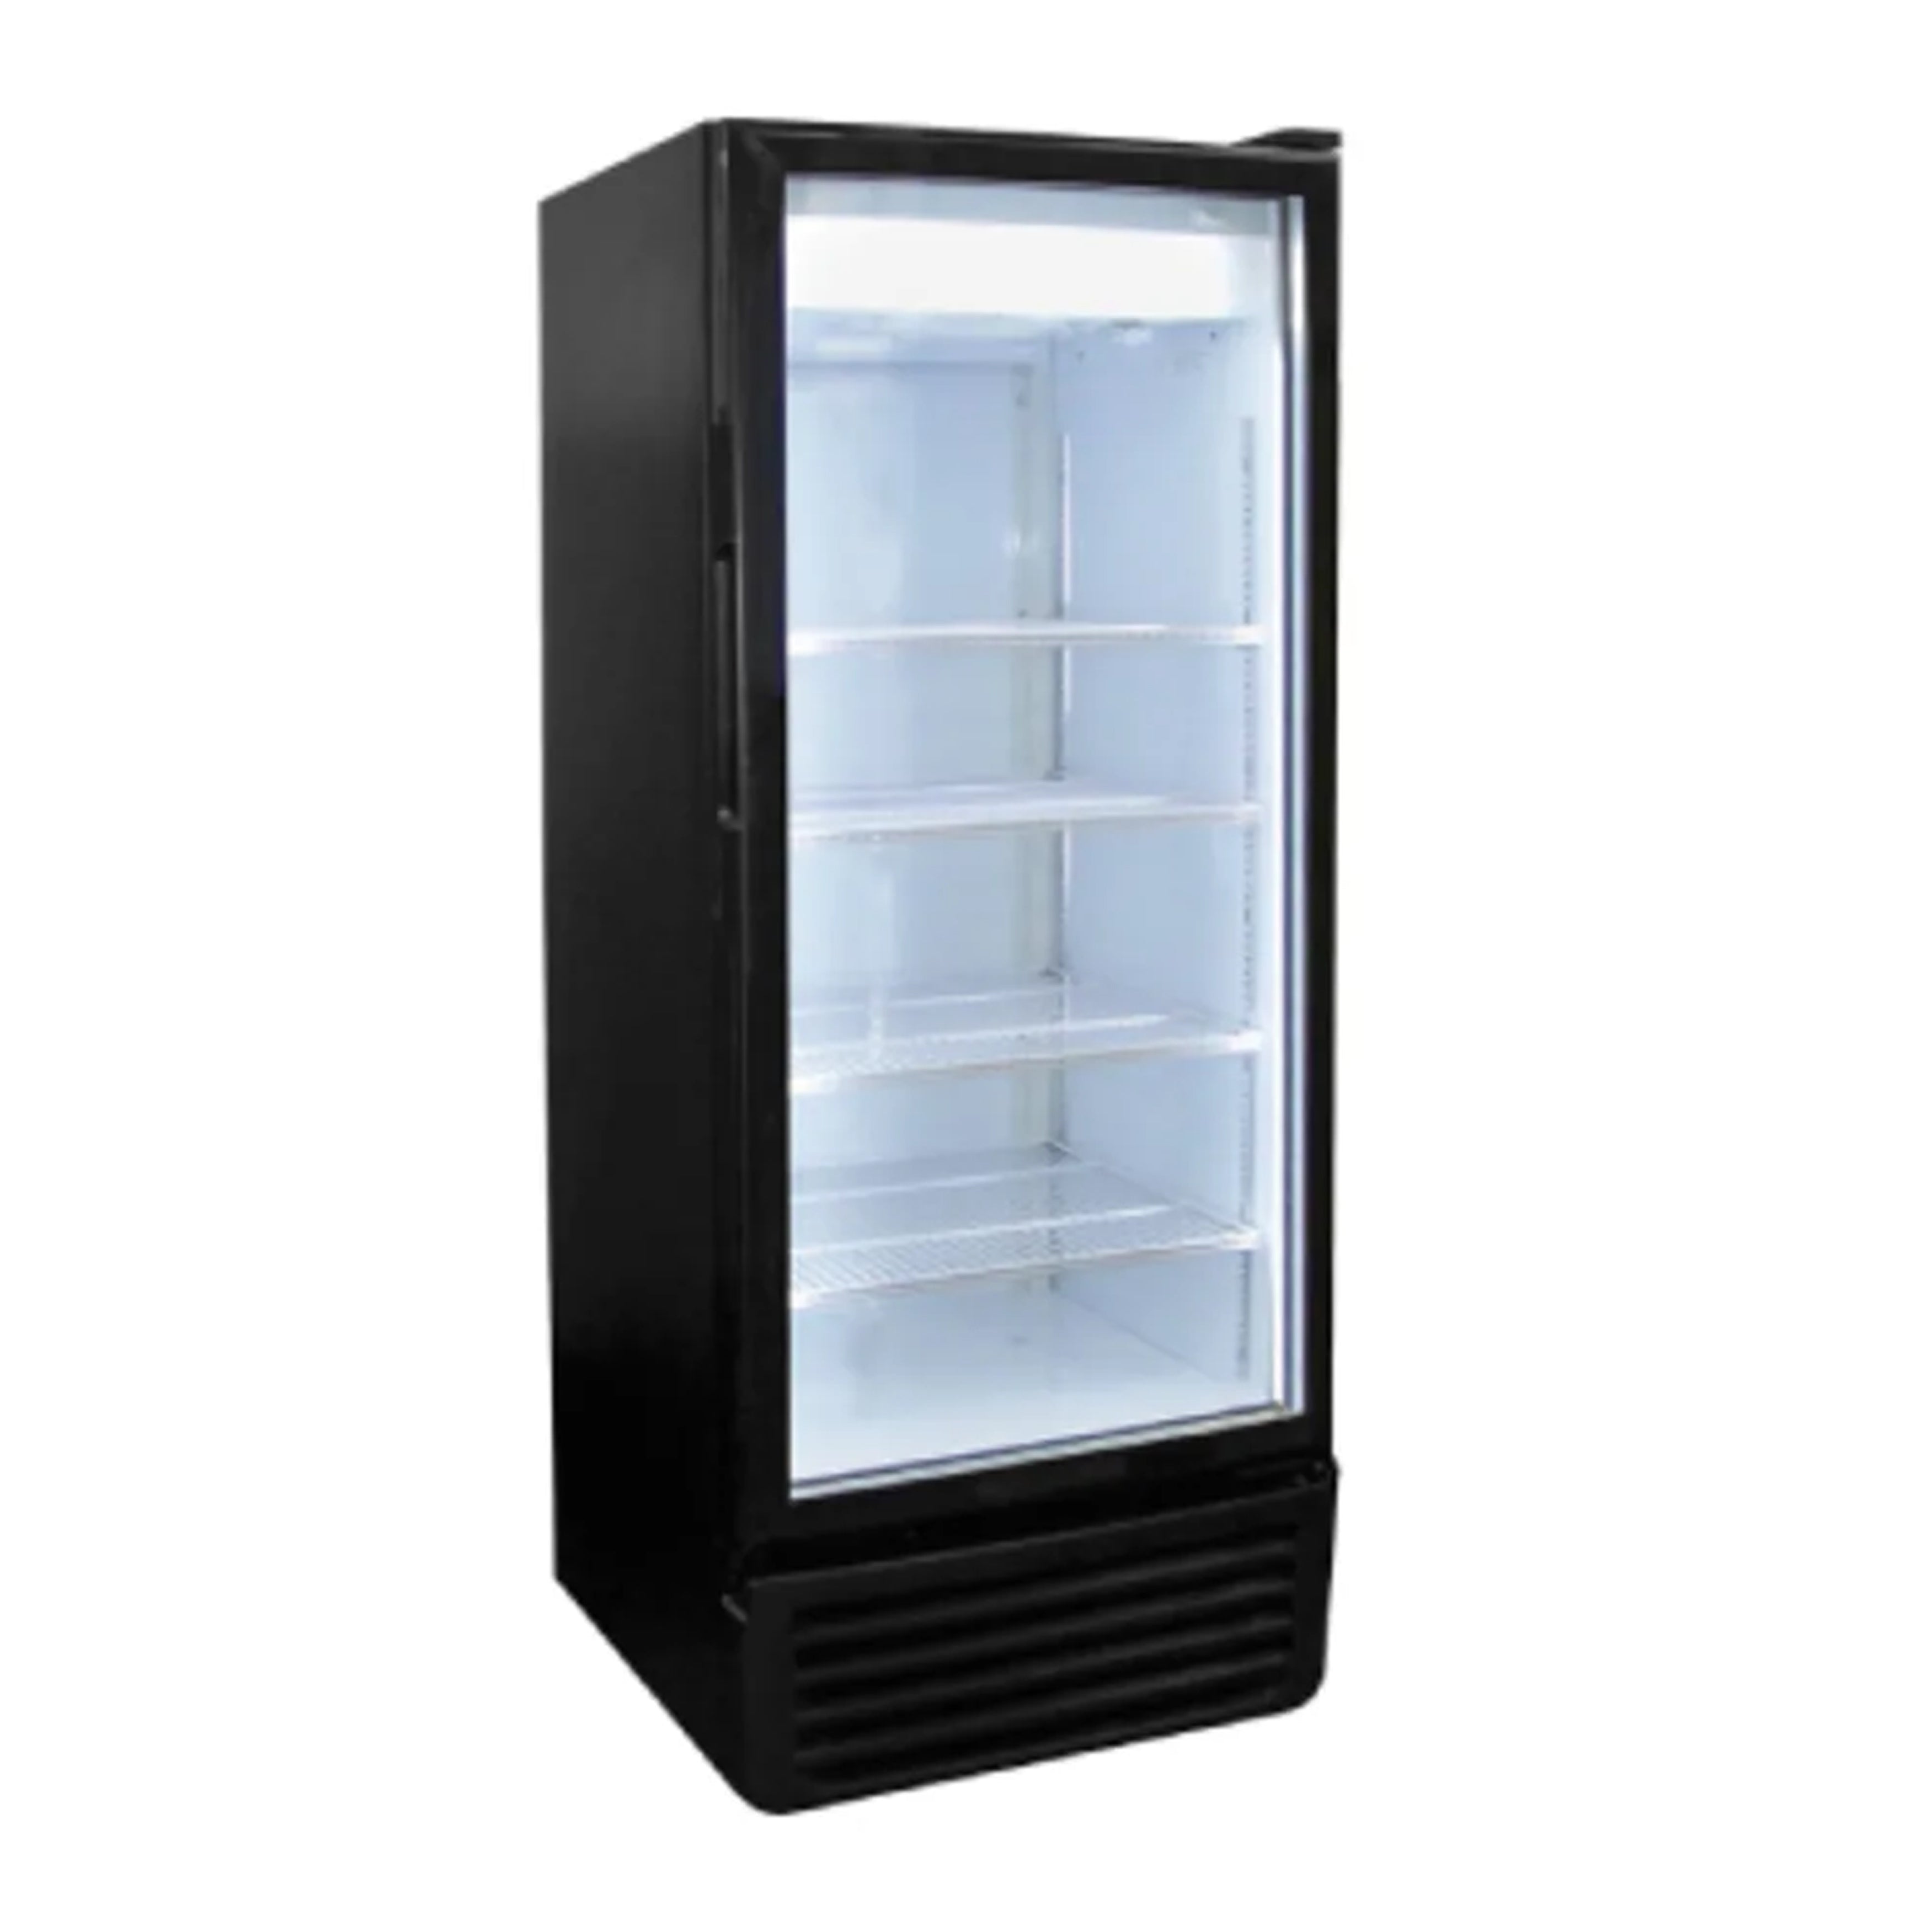 glass-door-refrigerator-commercial-kitchen-equipment